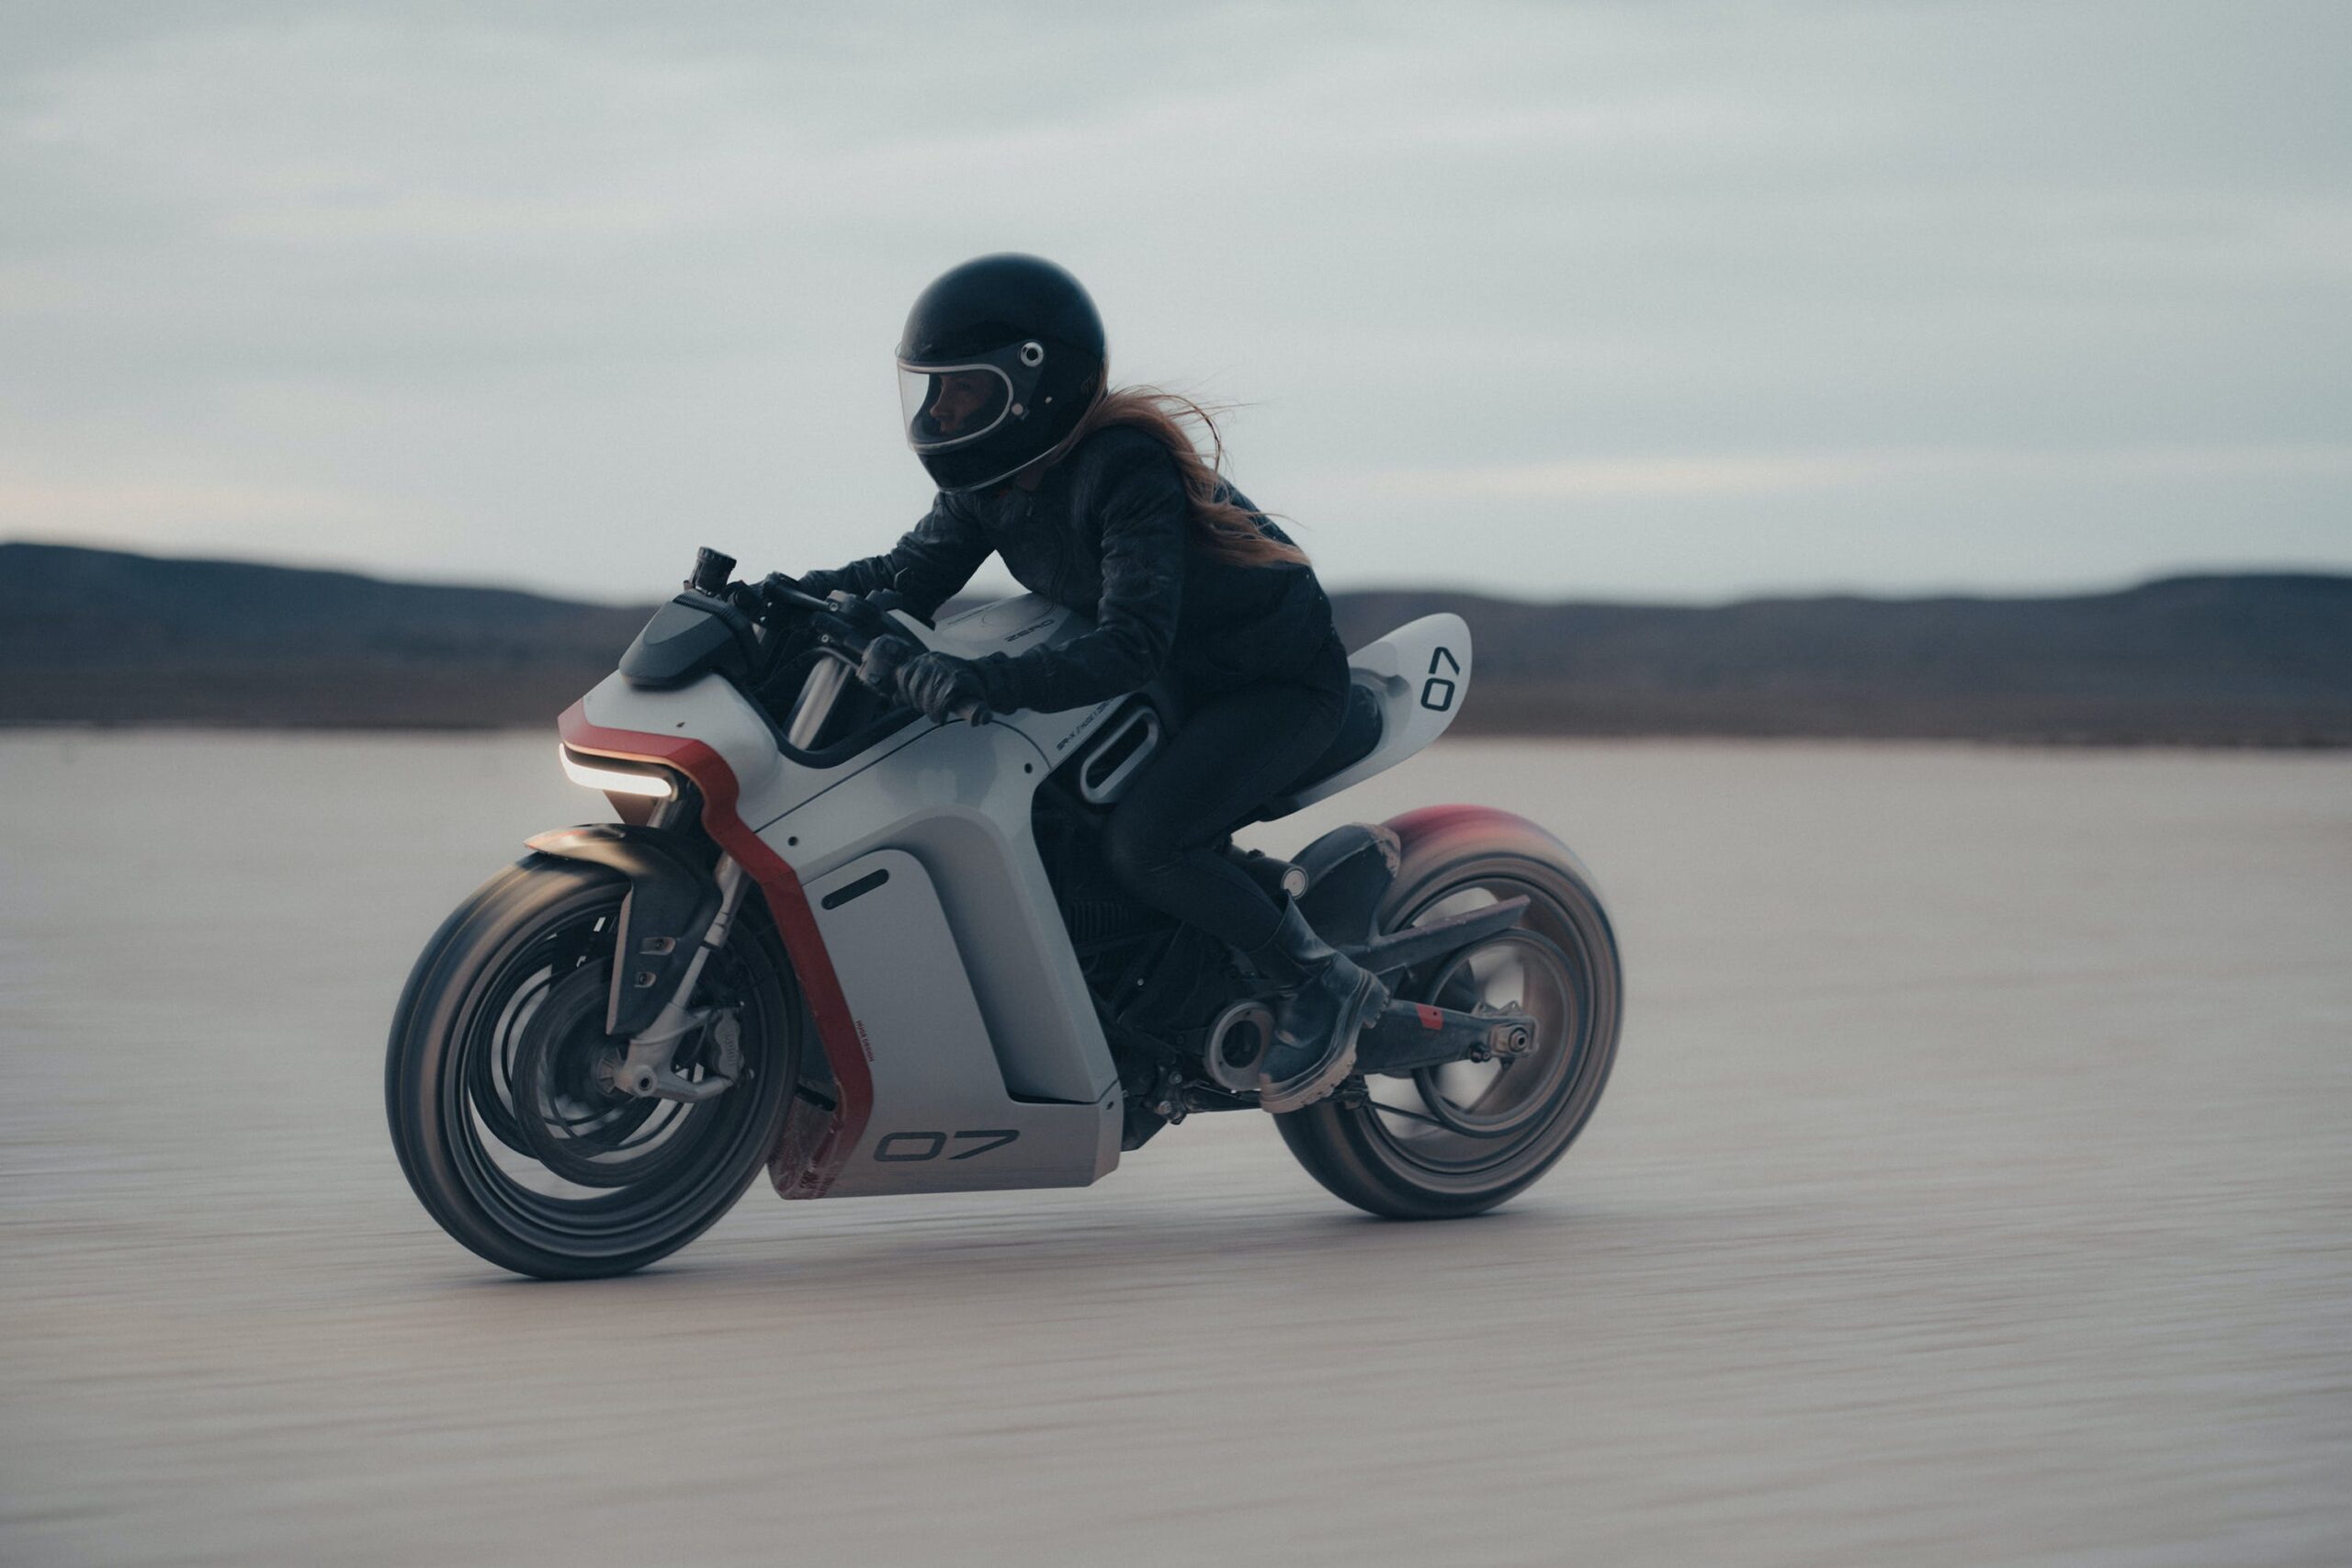 You are currently viewing Bi vozili tak električni motocikel? Zero SR-X prototip kot iz video igre